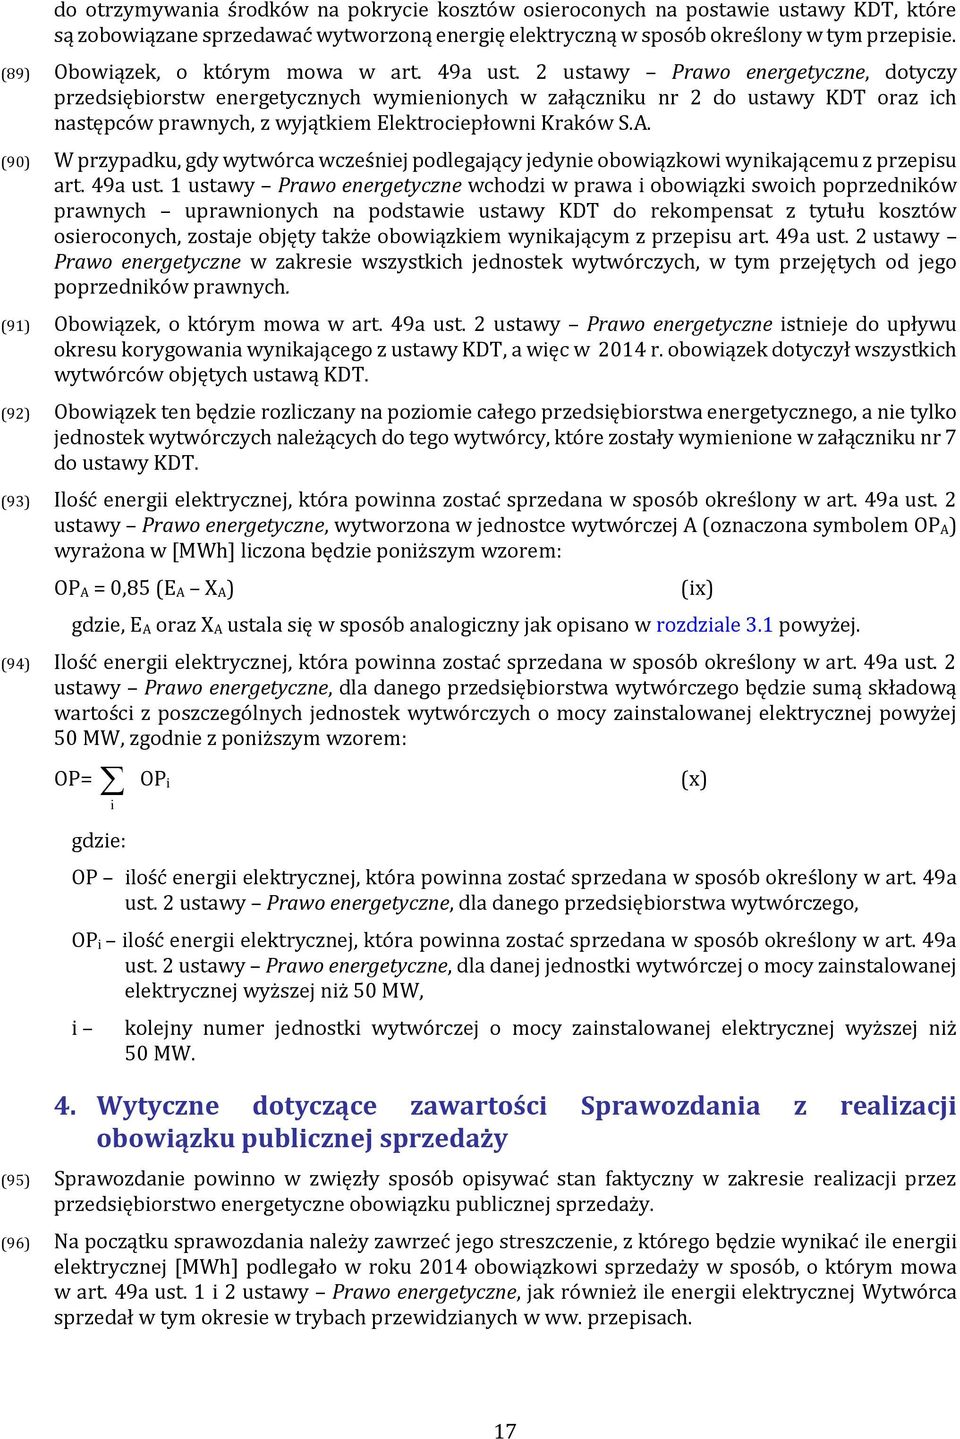 2 ustawy Prawo energetyczne, dotyczy przedsiębiorstw energetycznych wymienionych w załączniku nr 2 do ustawy KDT oraz ich następców prawnych, z wyjątkiem Elektrociepłowni Kraków S.A.